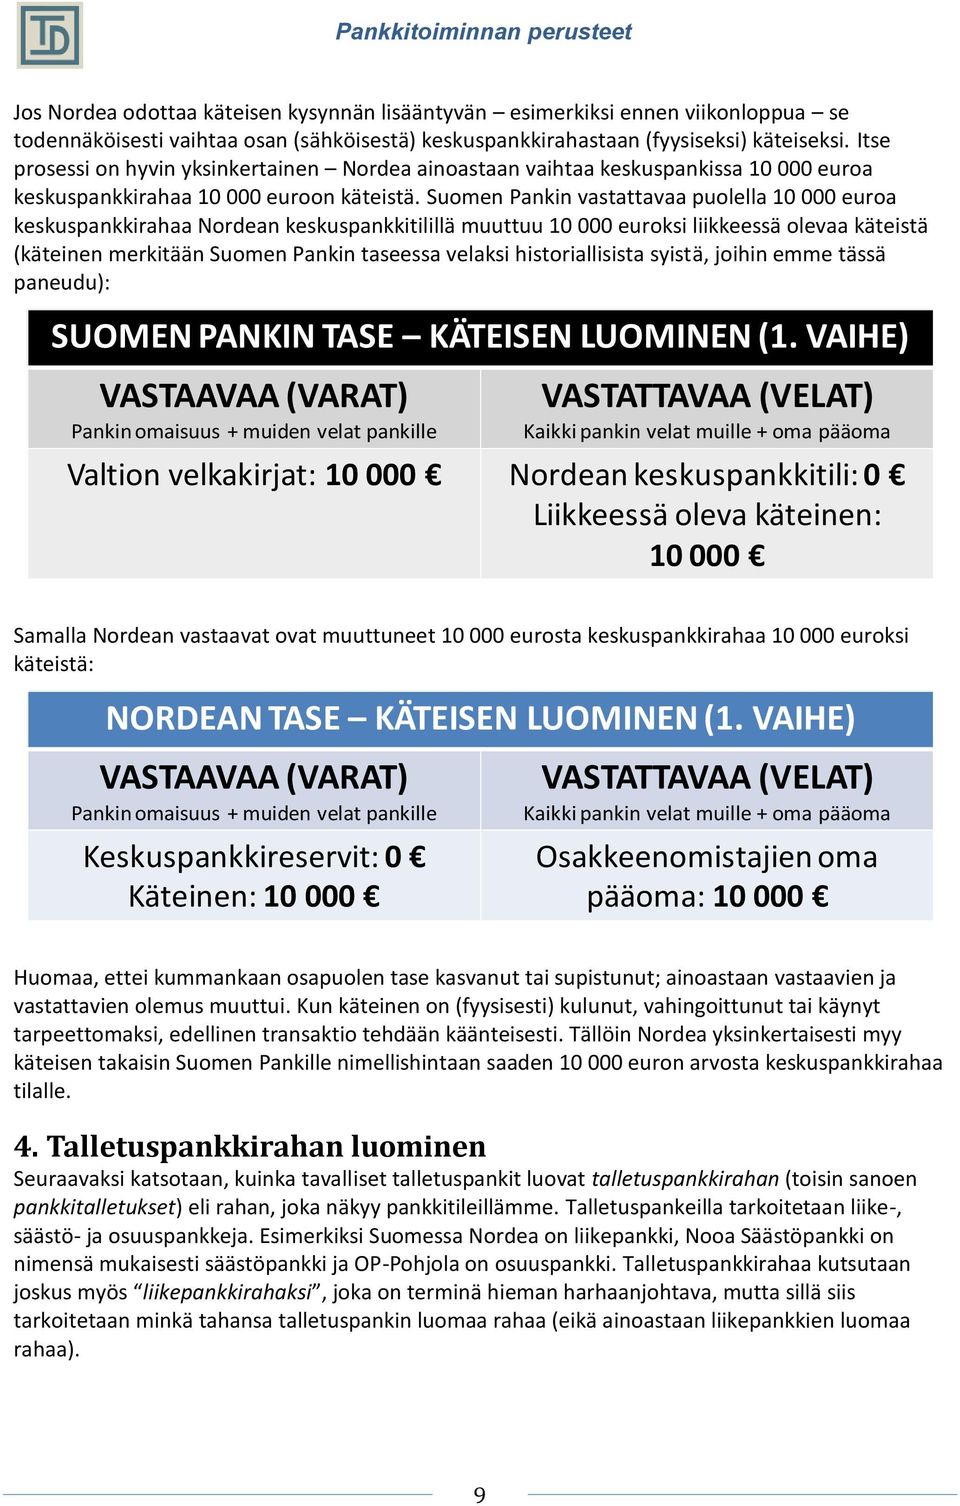 Suomen Pankin vastattavaa puolella 10 000 euroa keskuspankkirahaa Nordean keskuspankkitilillä muuttuu 10 000 euroksi liikkeessä olevaa käteistä (käteinen merkitään Suomen Pankin taseessa velaksi